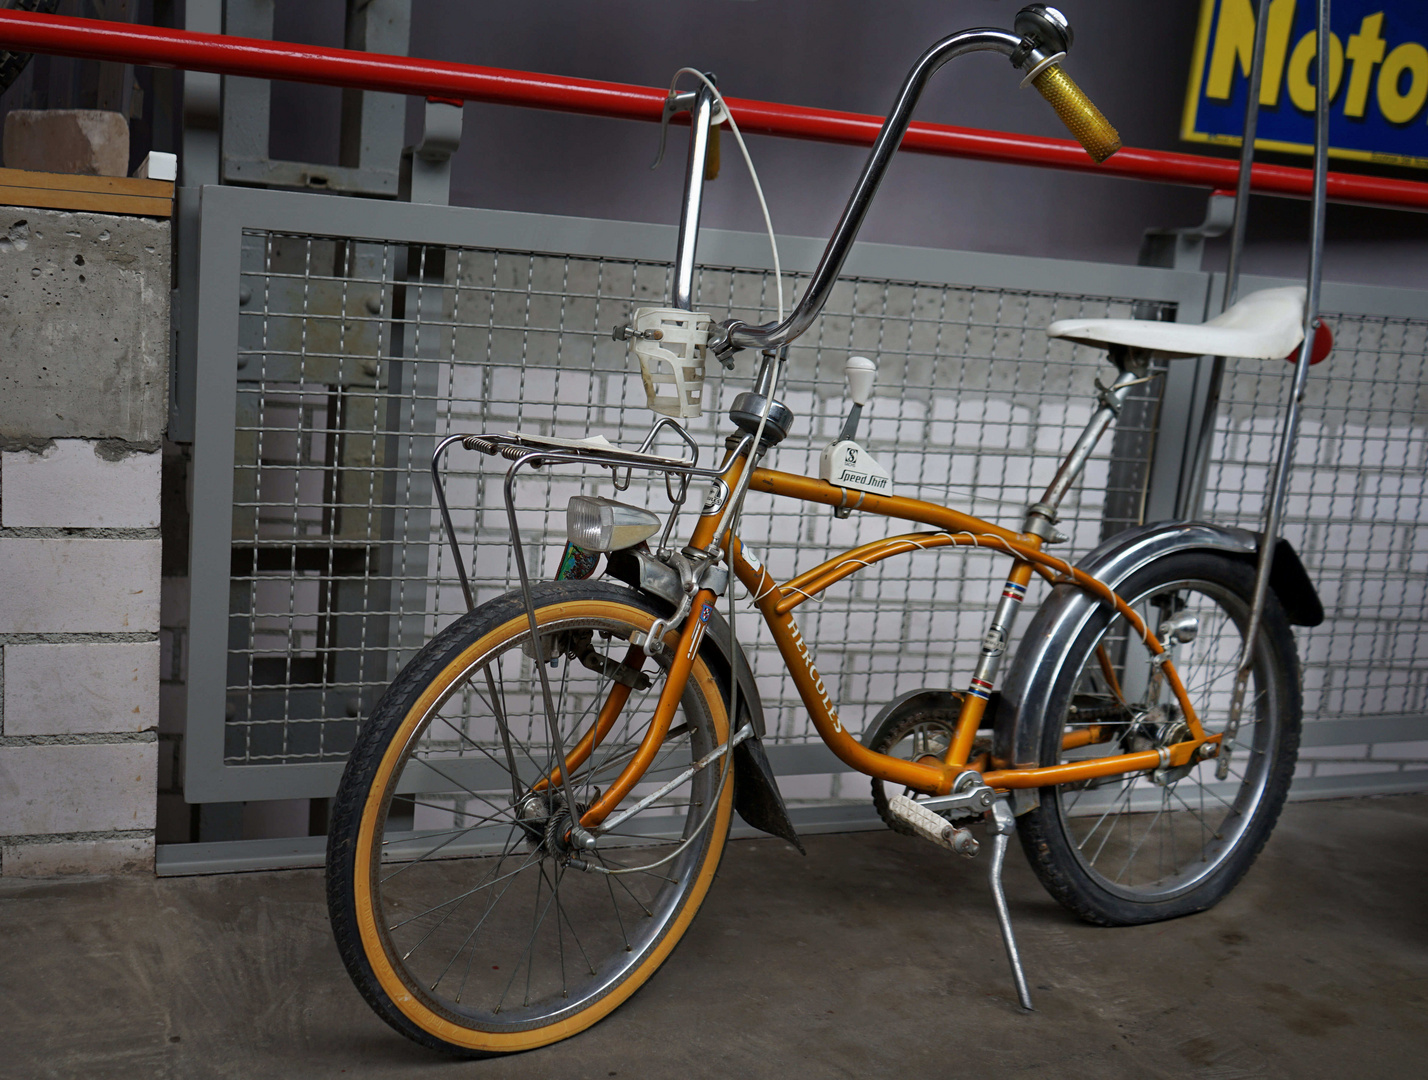 Traumbike aus den 70ern - das Bonanza-Fahrrad mit 3 Gängen